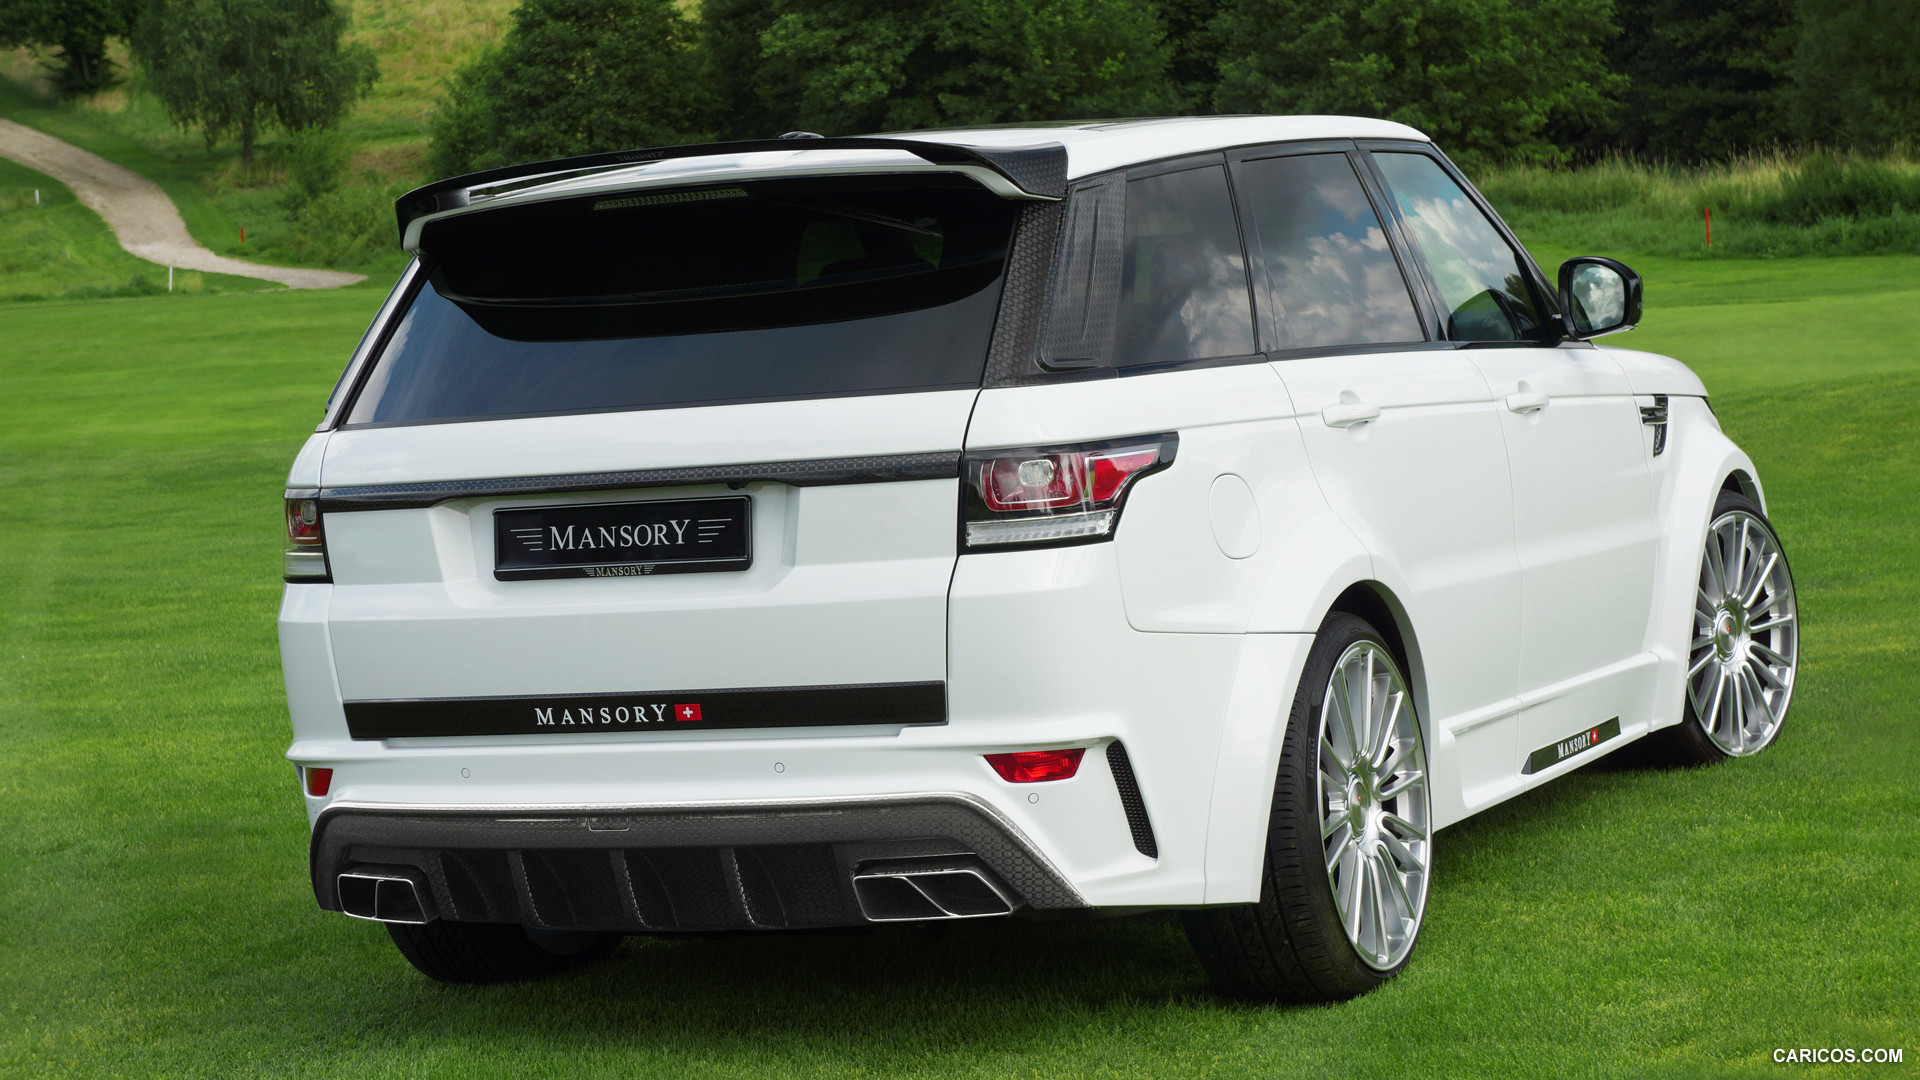 2015 Mansory Range Rover Sport (White) - Rear, #2 of 19